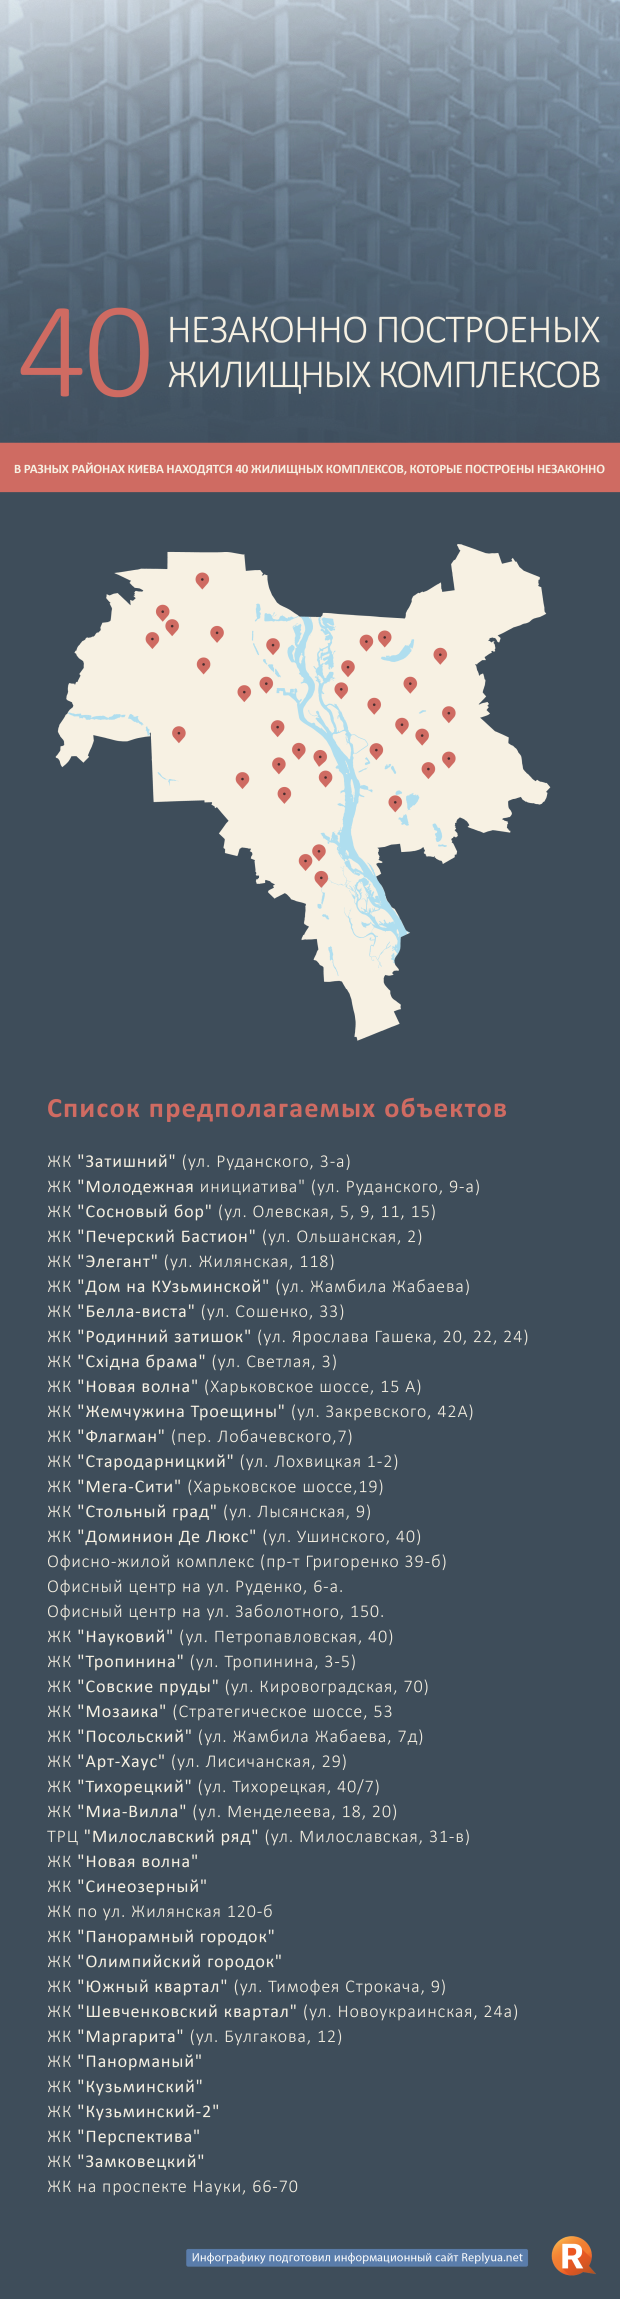 40 незаконно построенных жилищных комплексов Киева - инфографика